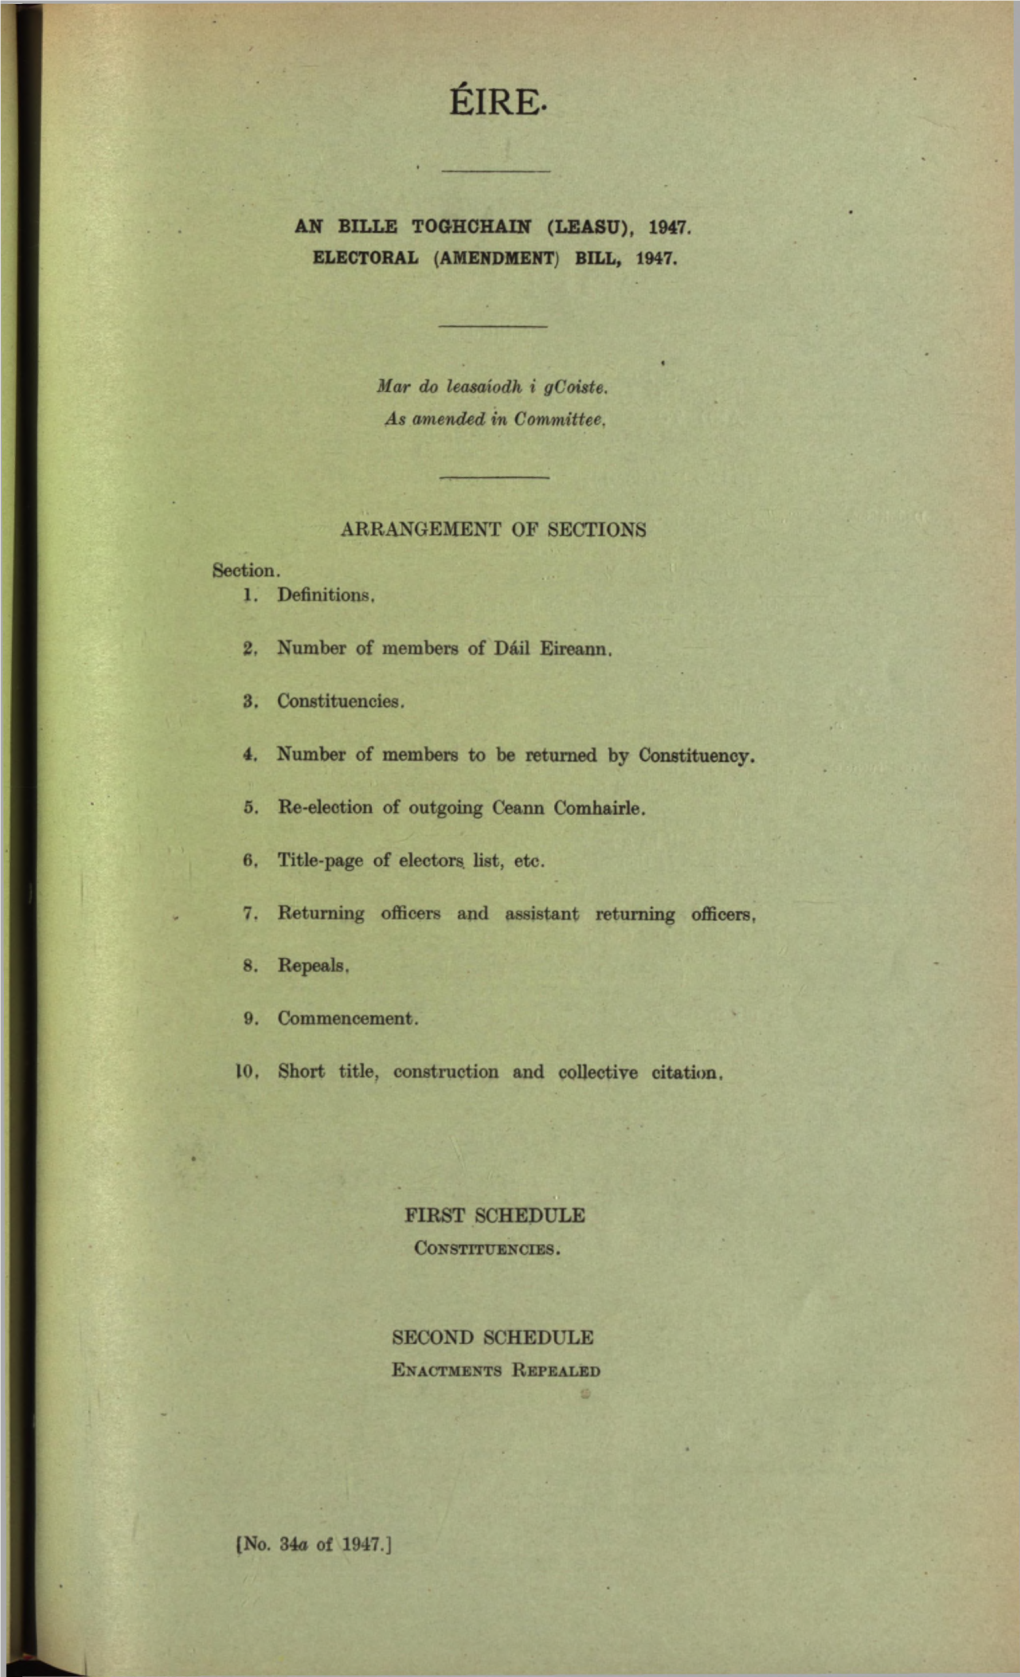 (Amendment) Bill, 1947